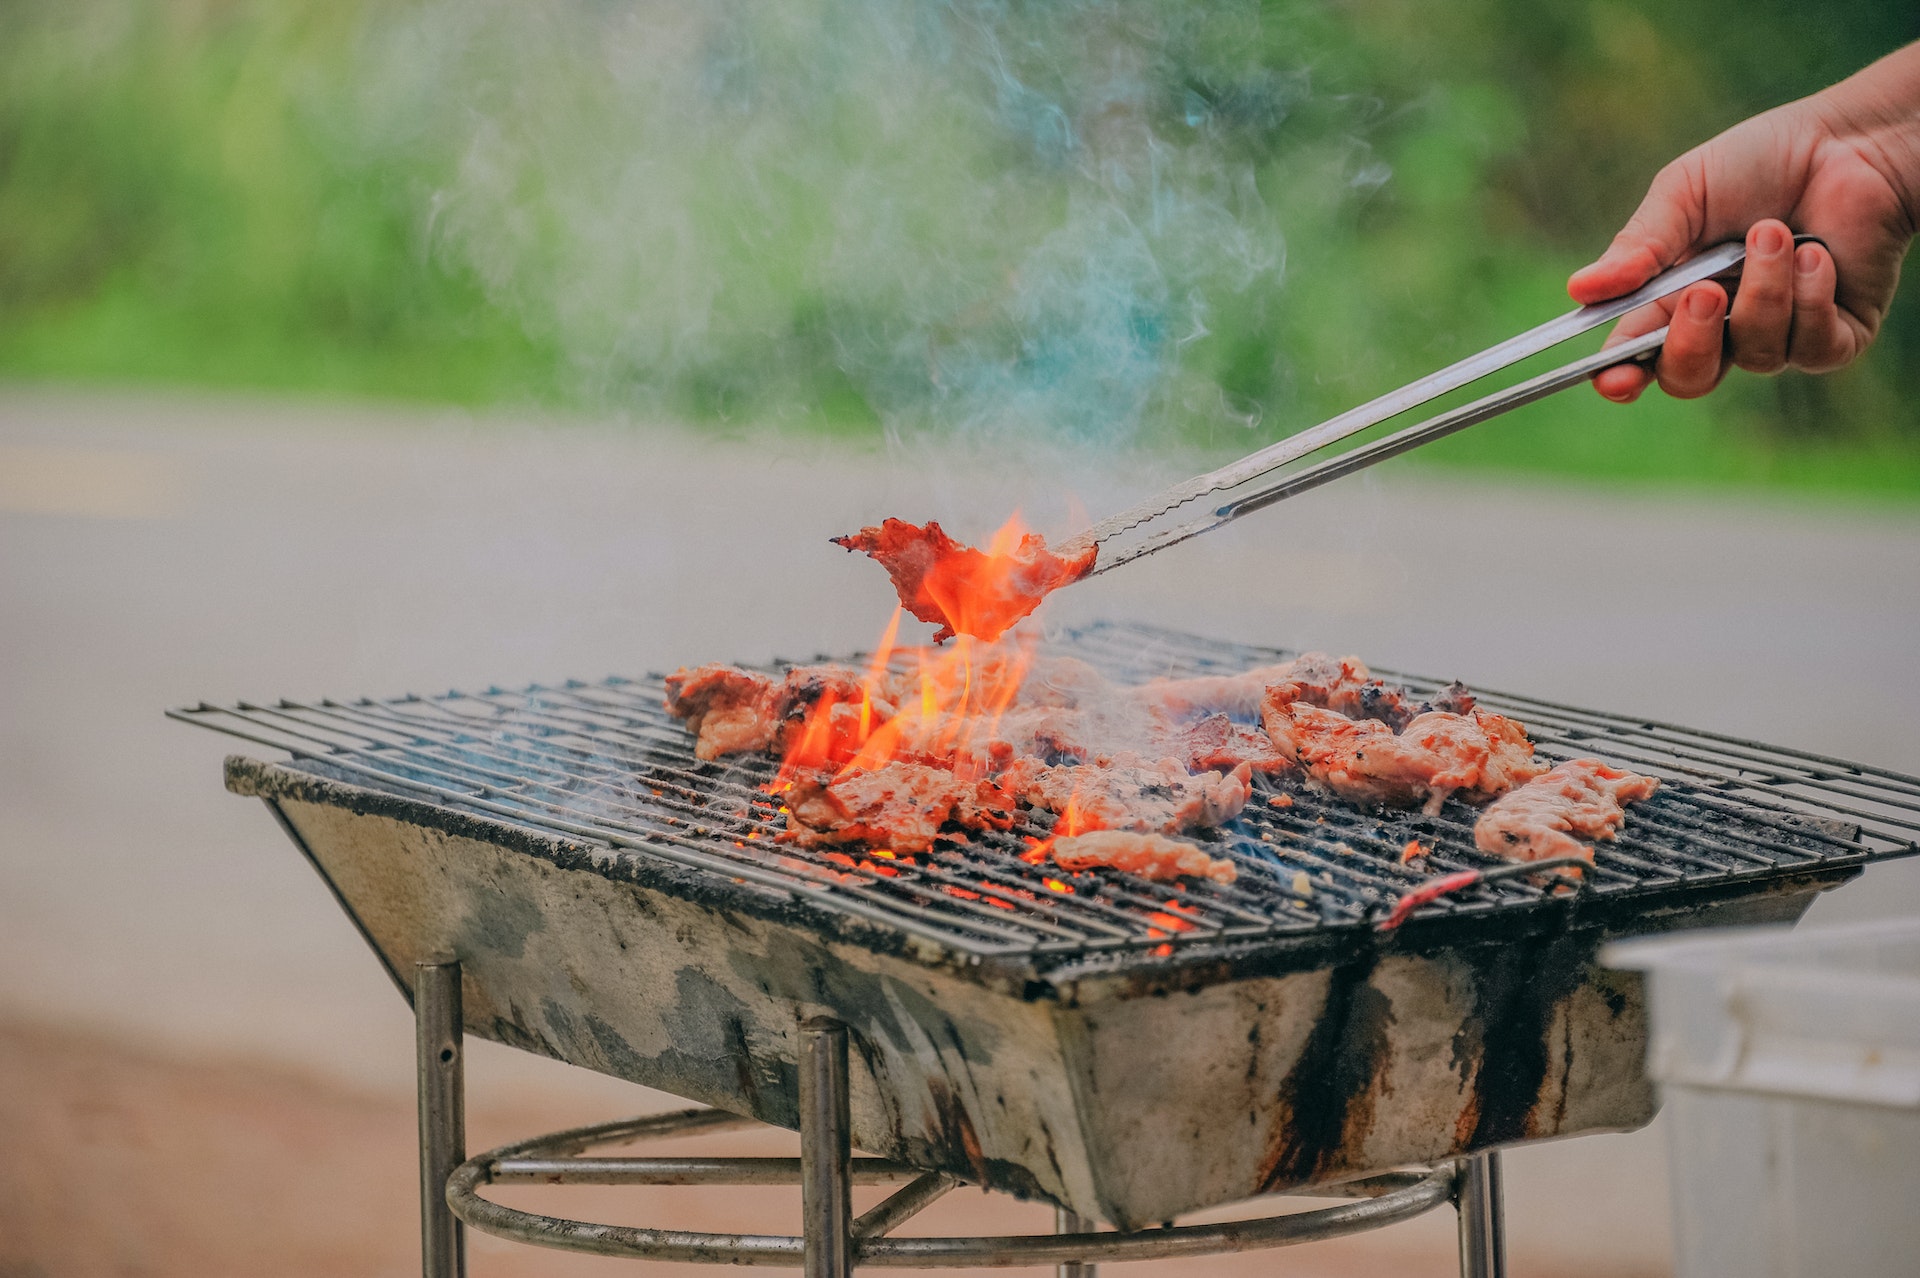 De 7 beste tips voor het barbecueën